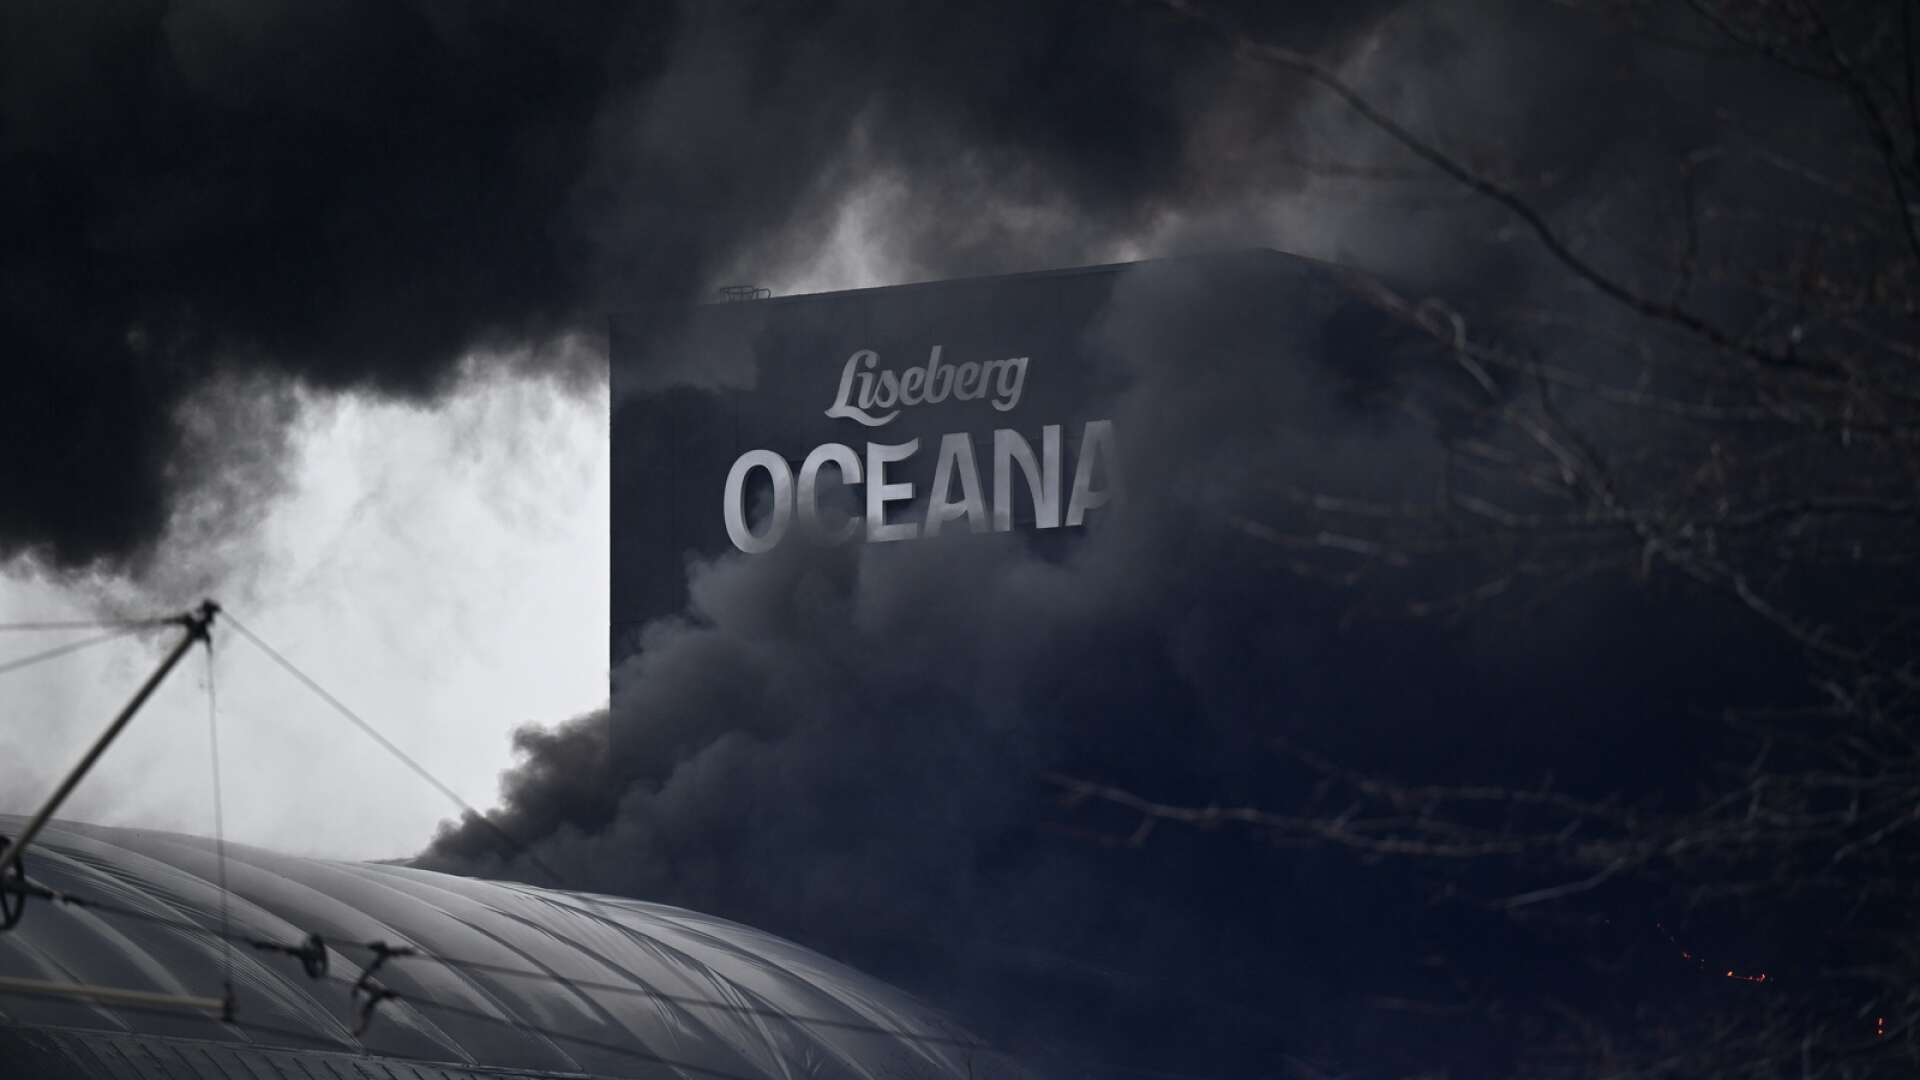 En kraftig brand har brutit ut i Lisebergs nya vattenvärld Oceana i Göteborg. Den bärande konstruktionen har levererats av Moelven Limträ.